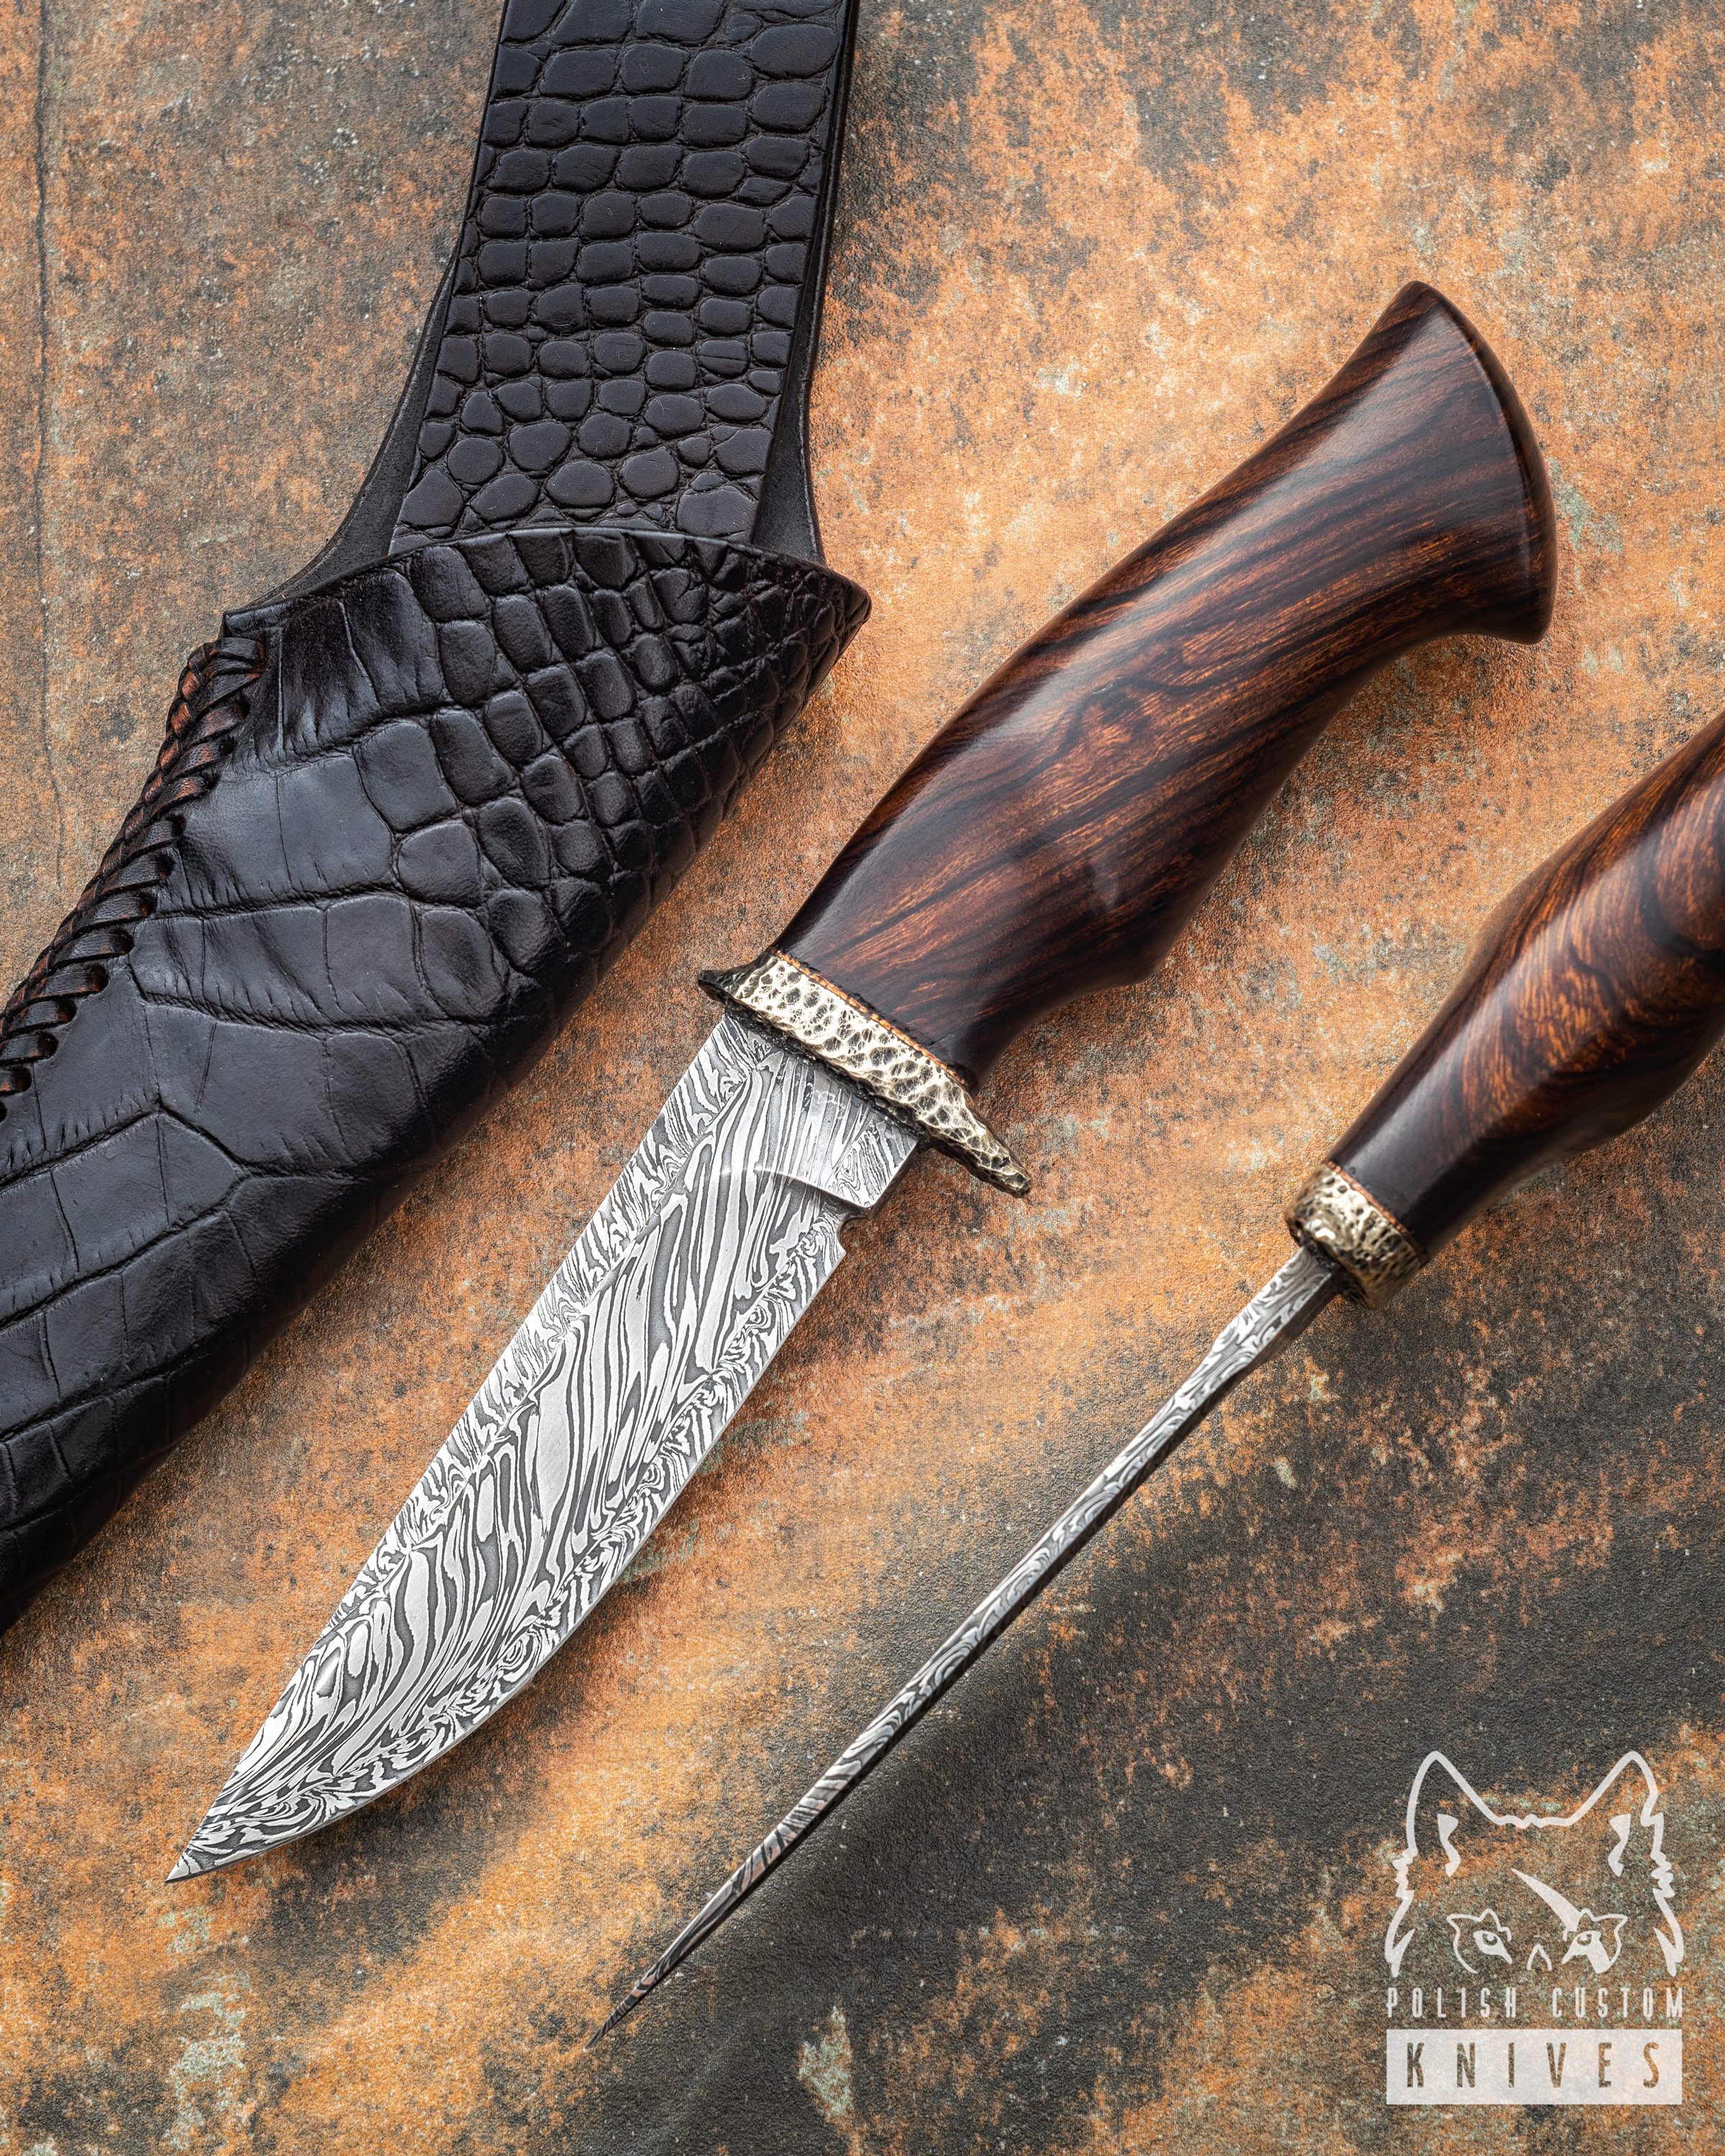 Shark Knife  Arizona Custom Knives